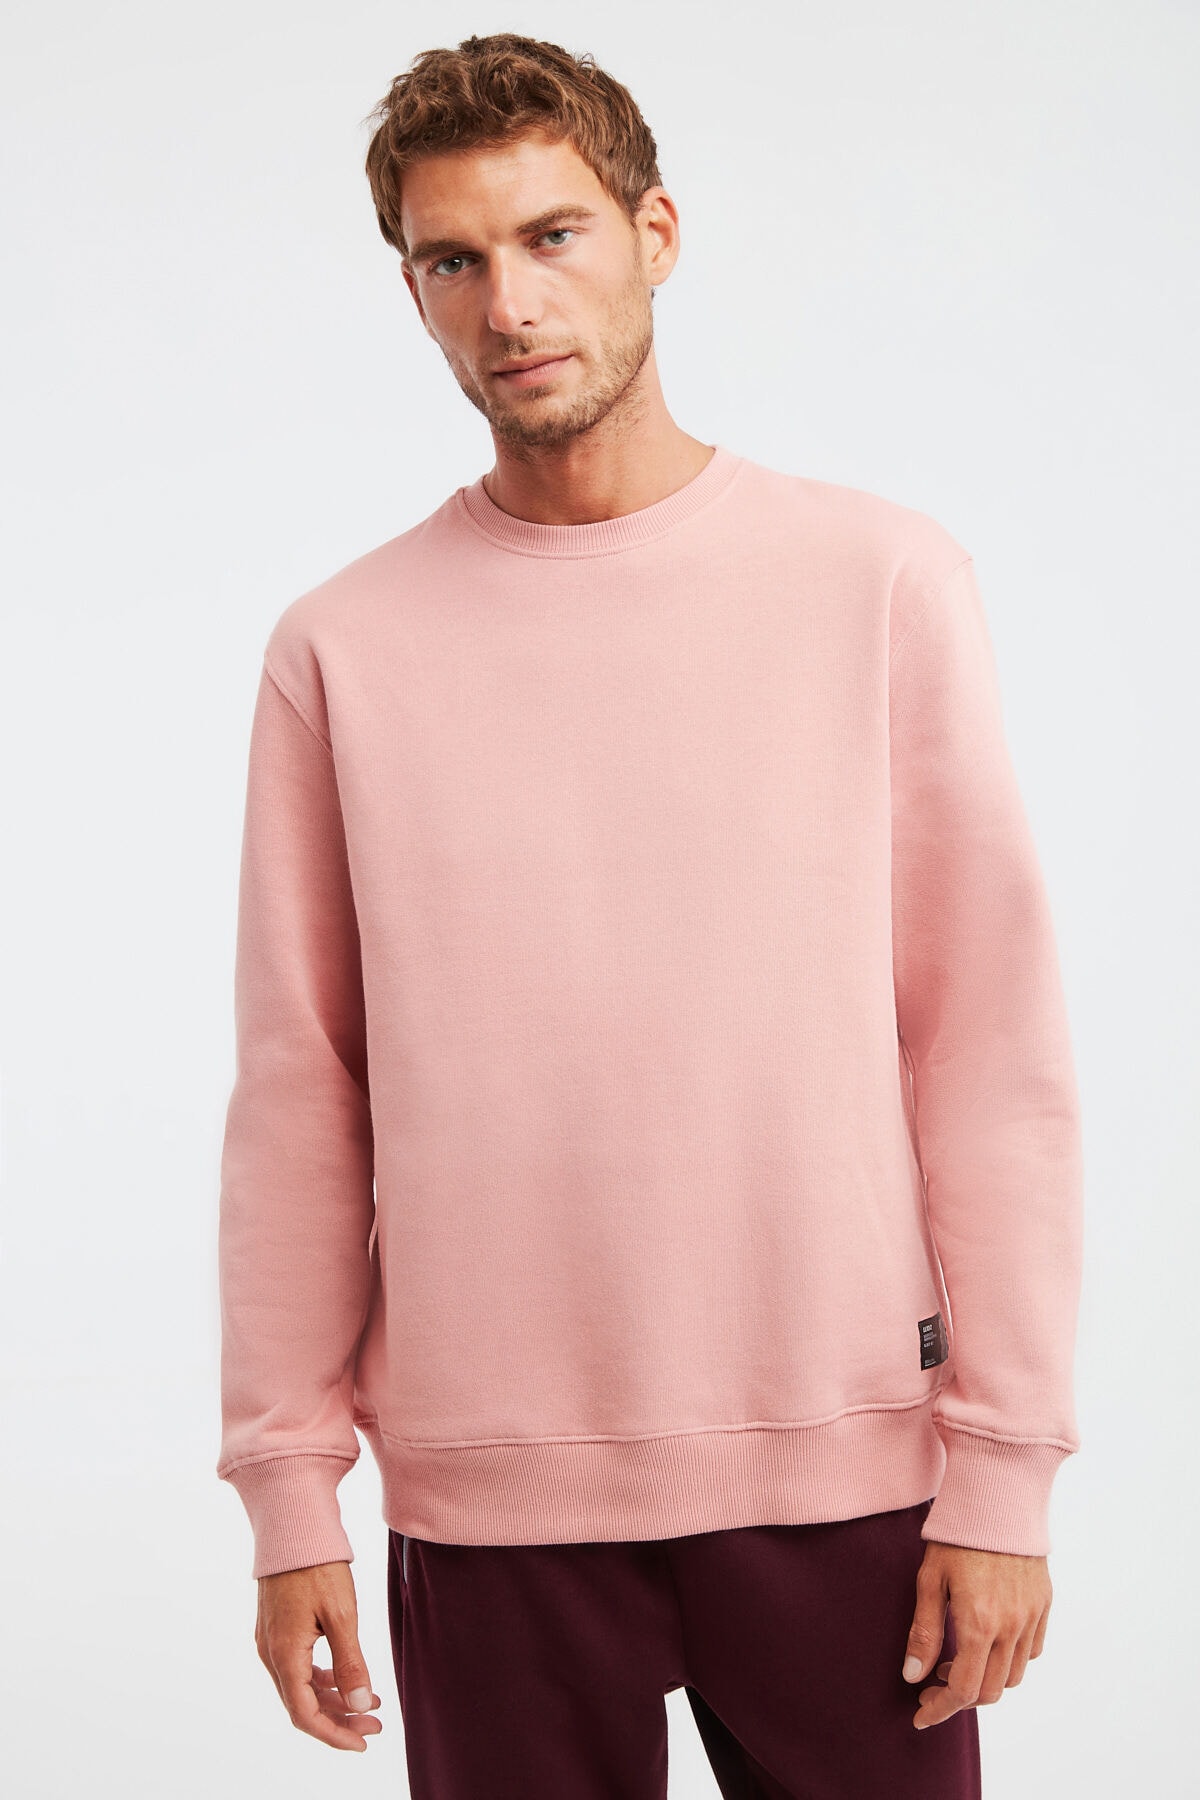 GRIMELANGE Travis Men's Soft Fabric Regular Fit Round Neck Pink Sweatshir